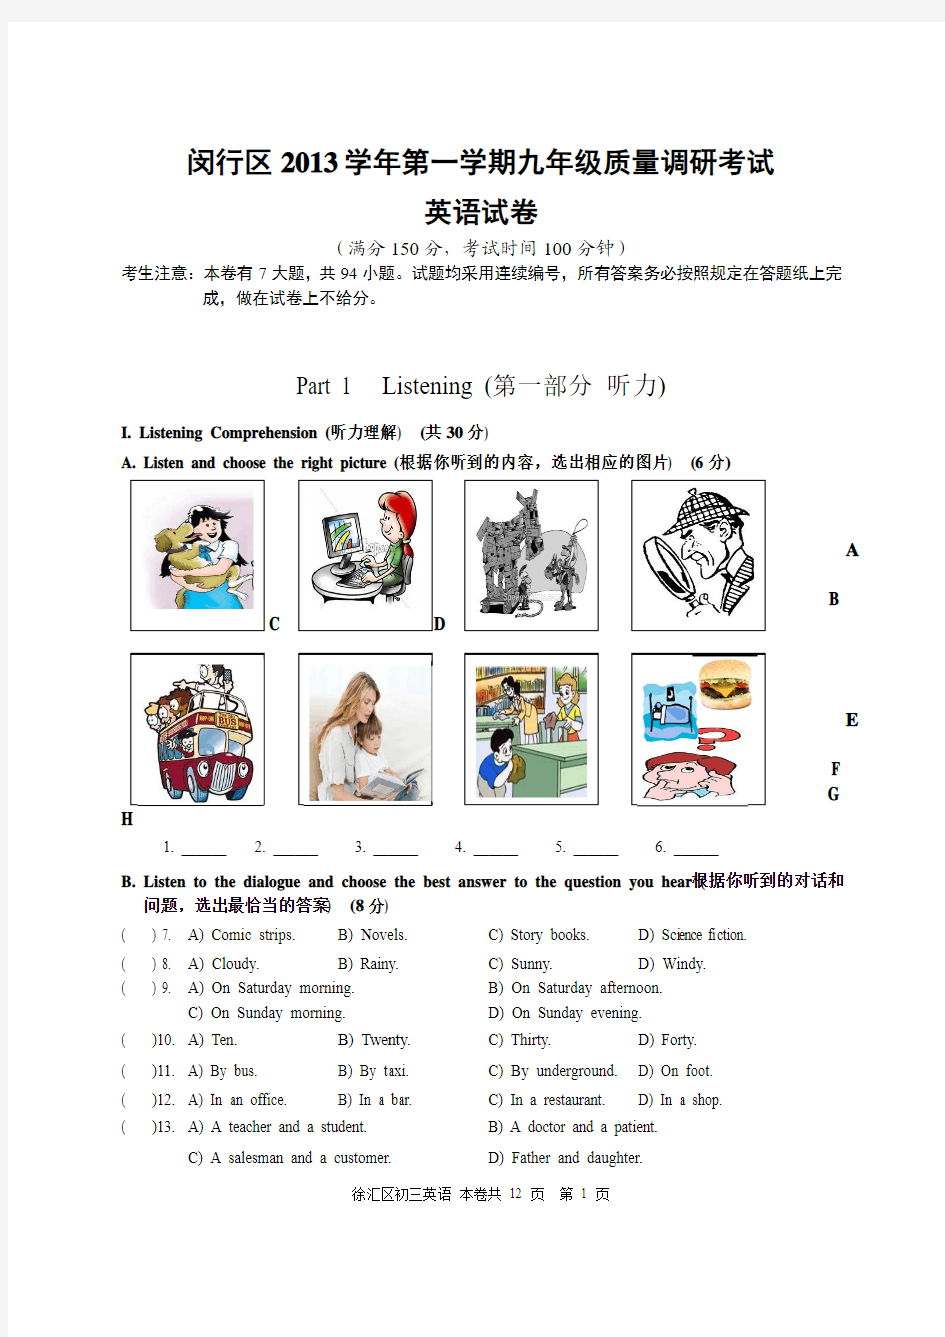 上海市2014年九年级中考闵行区一模试卷和答案及评分要求